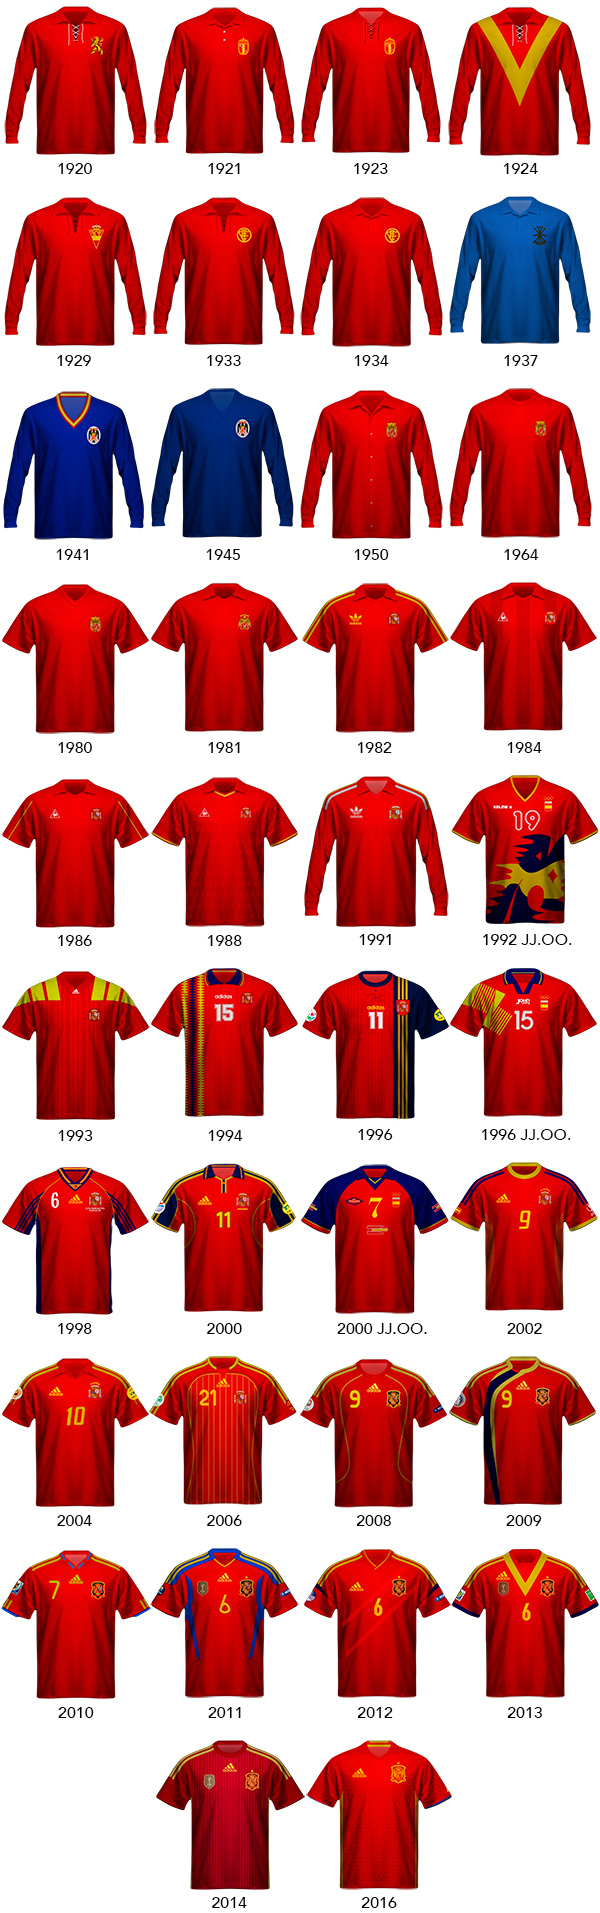 retroblog - Historia de la camiseta de España